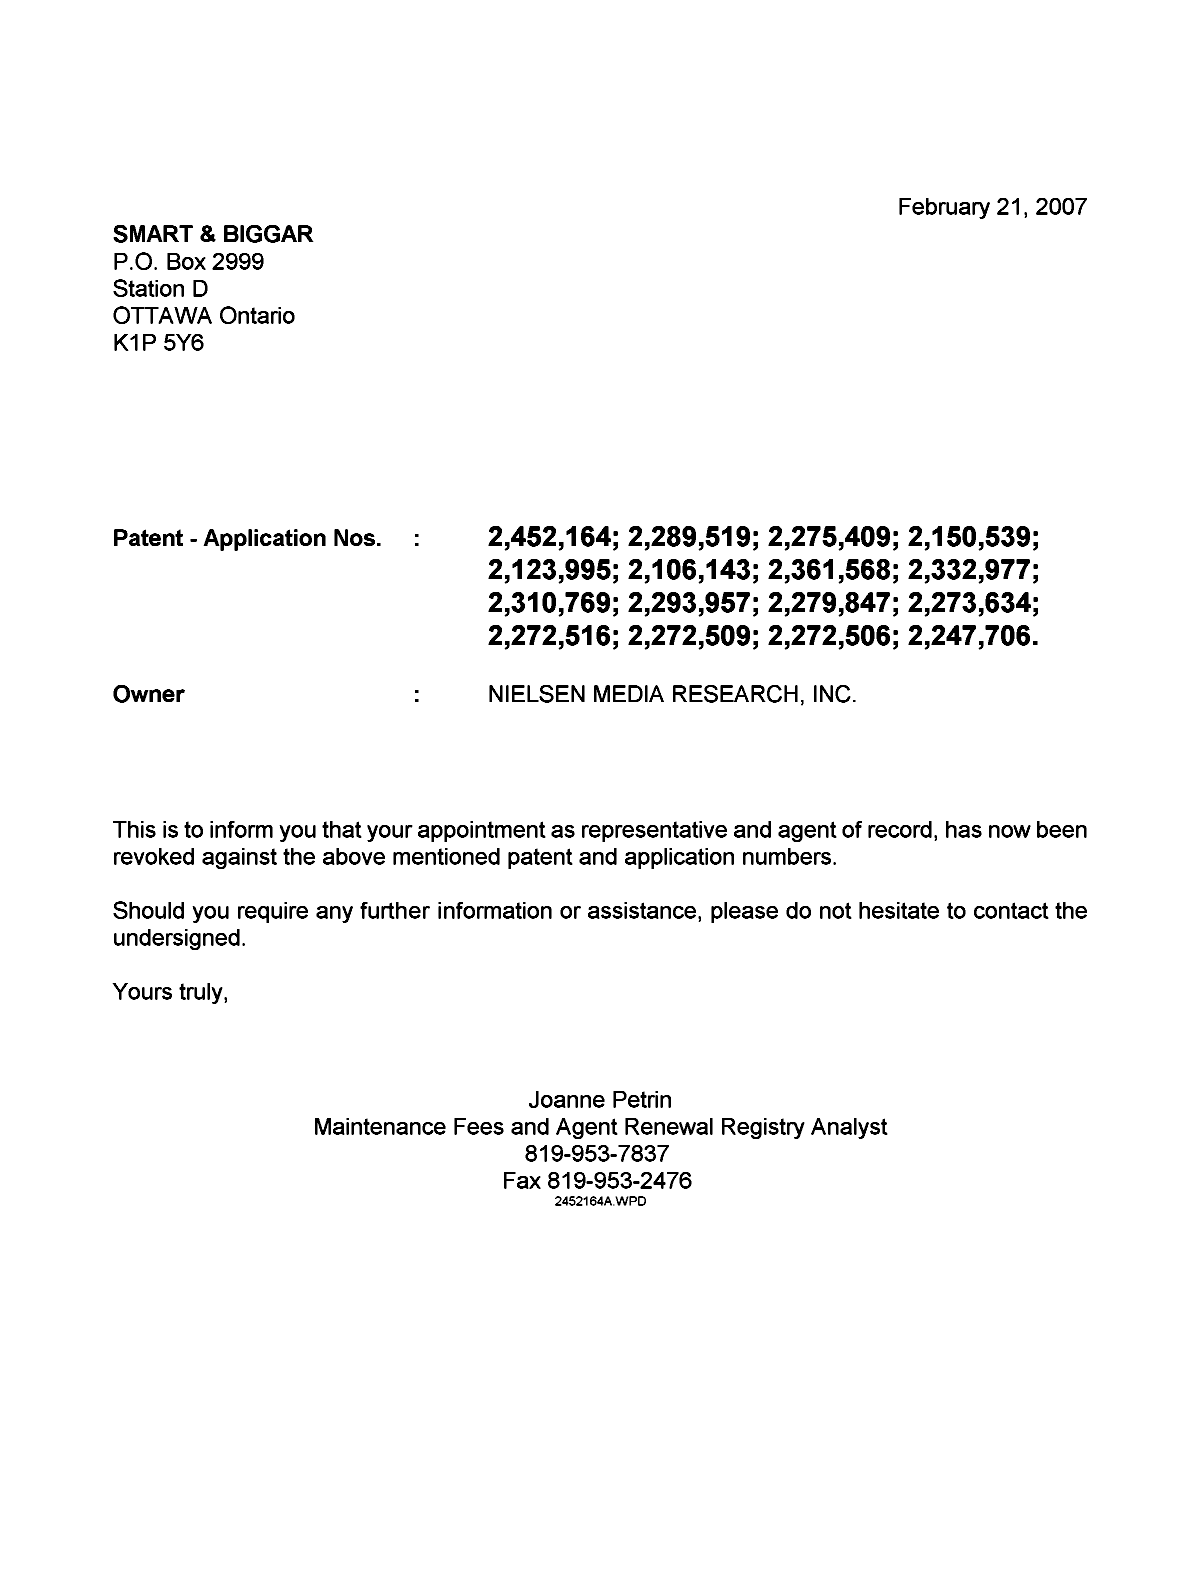 Document de brevet canadien 2275409. Correspondance 20061221. Image 1 de 1